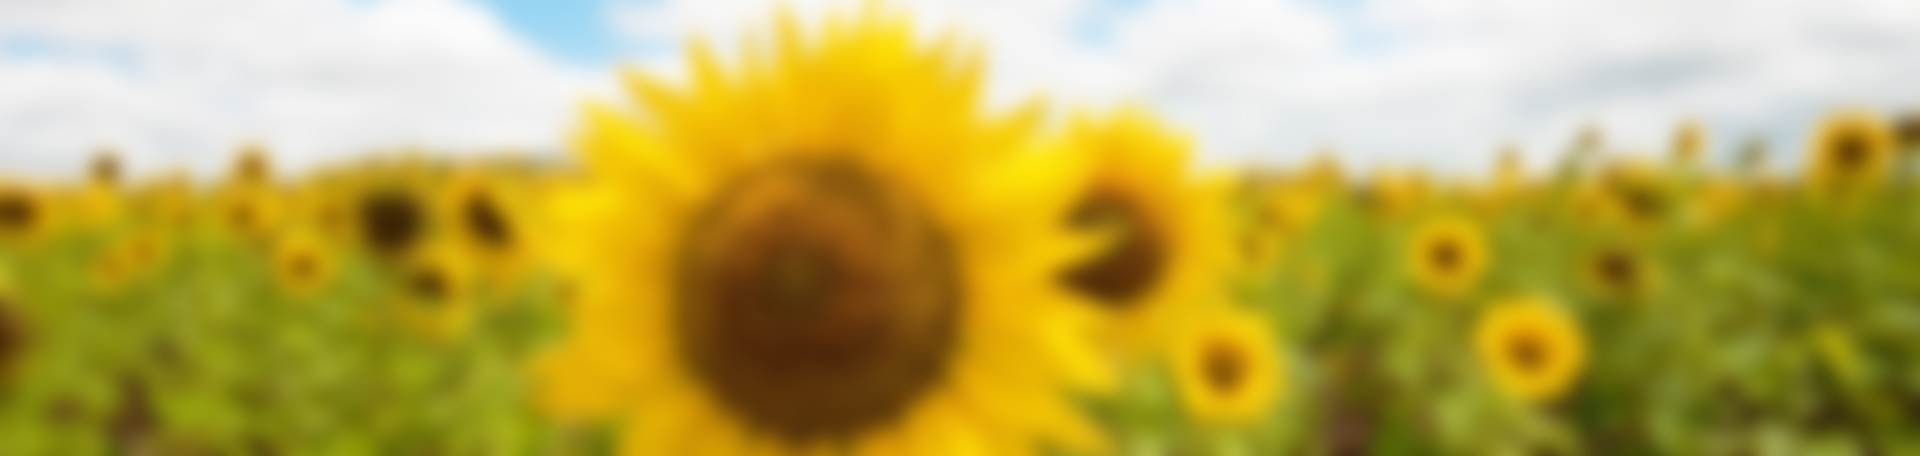 flowers_fields_sunflowers_desktop_1920x1200_hd-wallpaper-835398